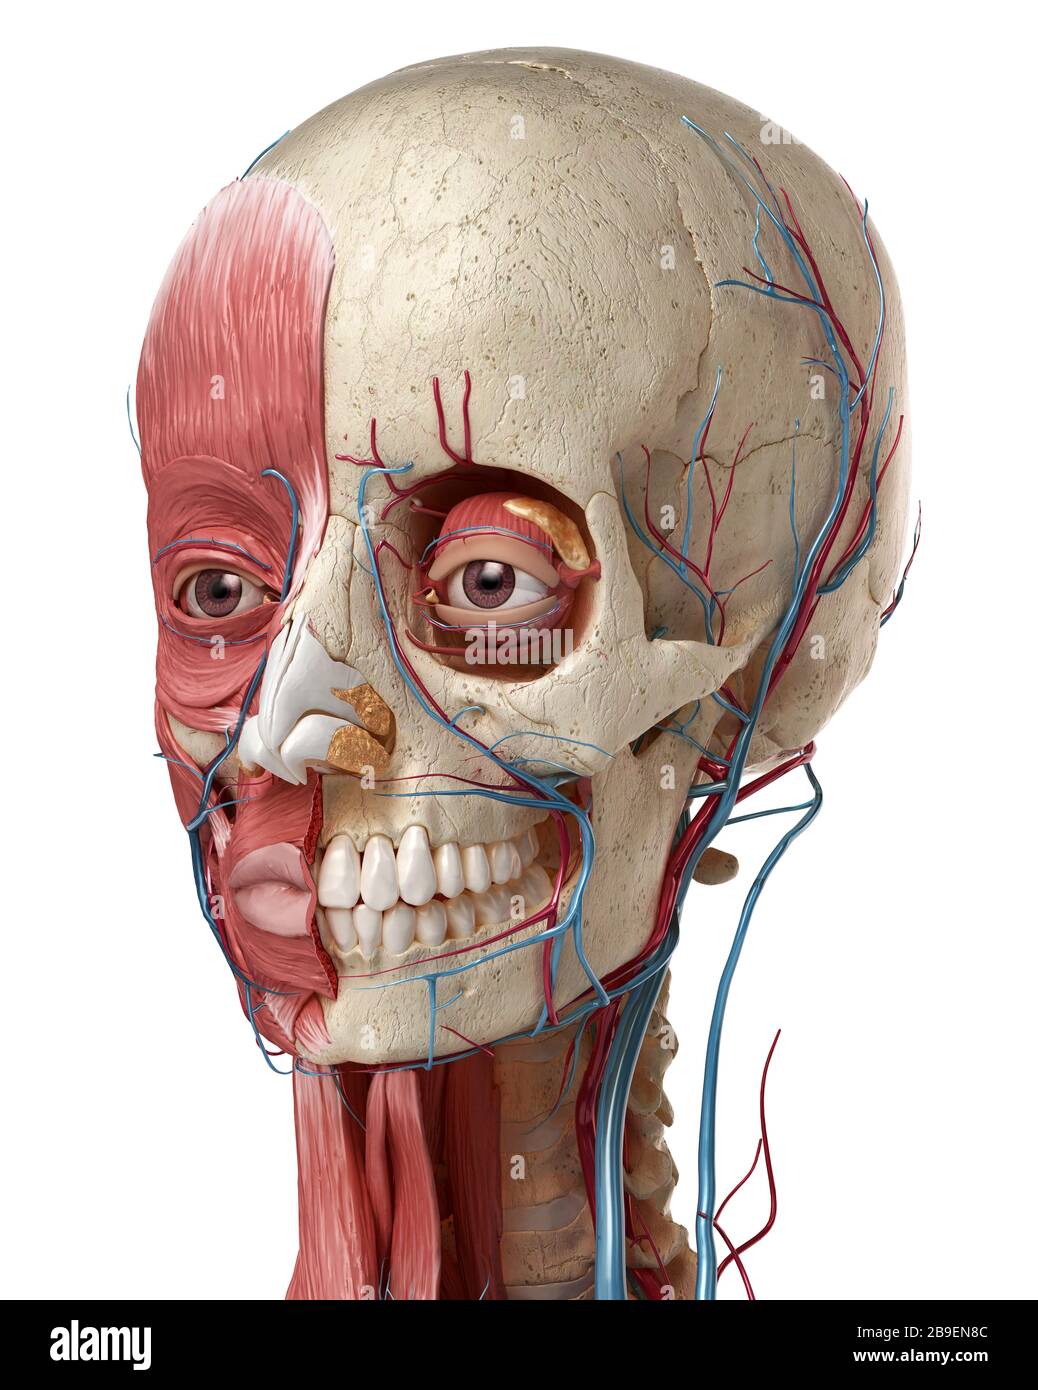 Anatomia umana della testa con cranio, bulbi oculari, vasi sanguigni e muscoli, sfondo bianco. Foto Stock